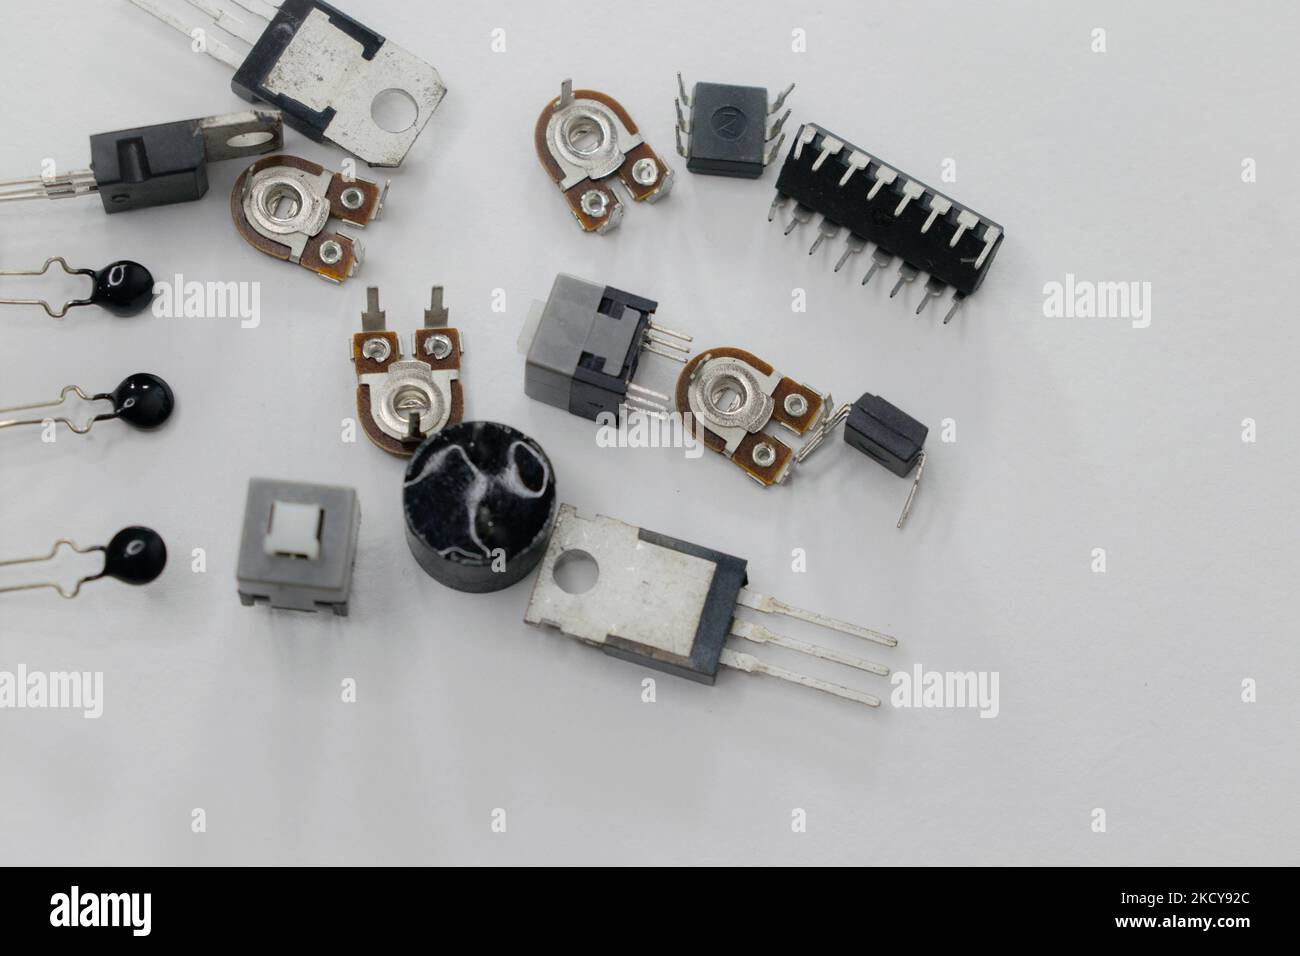 Apparecchiature utilizzate in progetti di ingegneria isolate su sfondo bianco. Resistori, condensatori, diodi, tiristori, interruttori, microprocessori isolati. Foto Stock